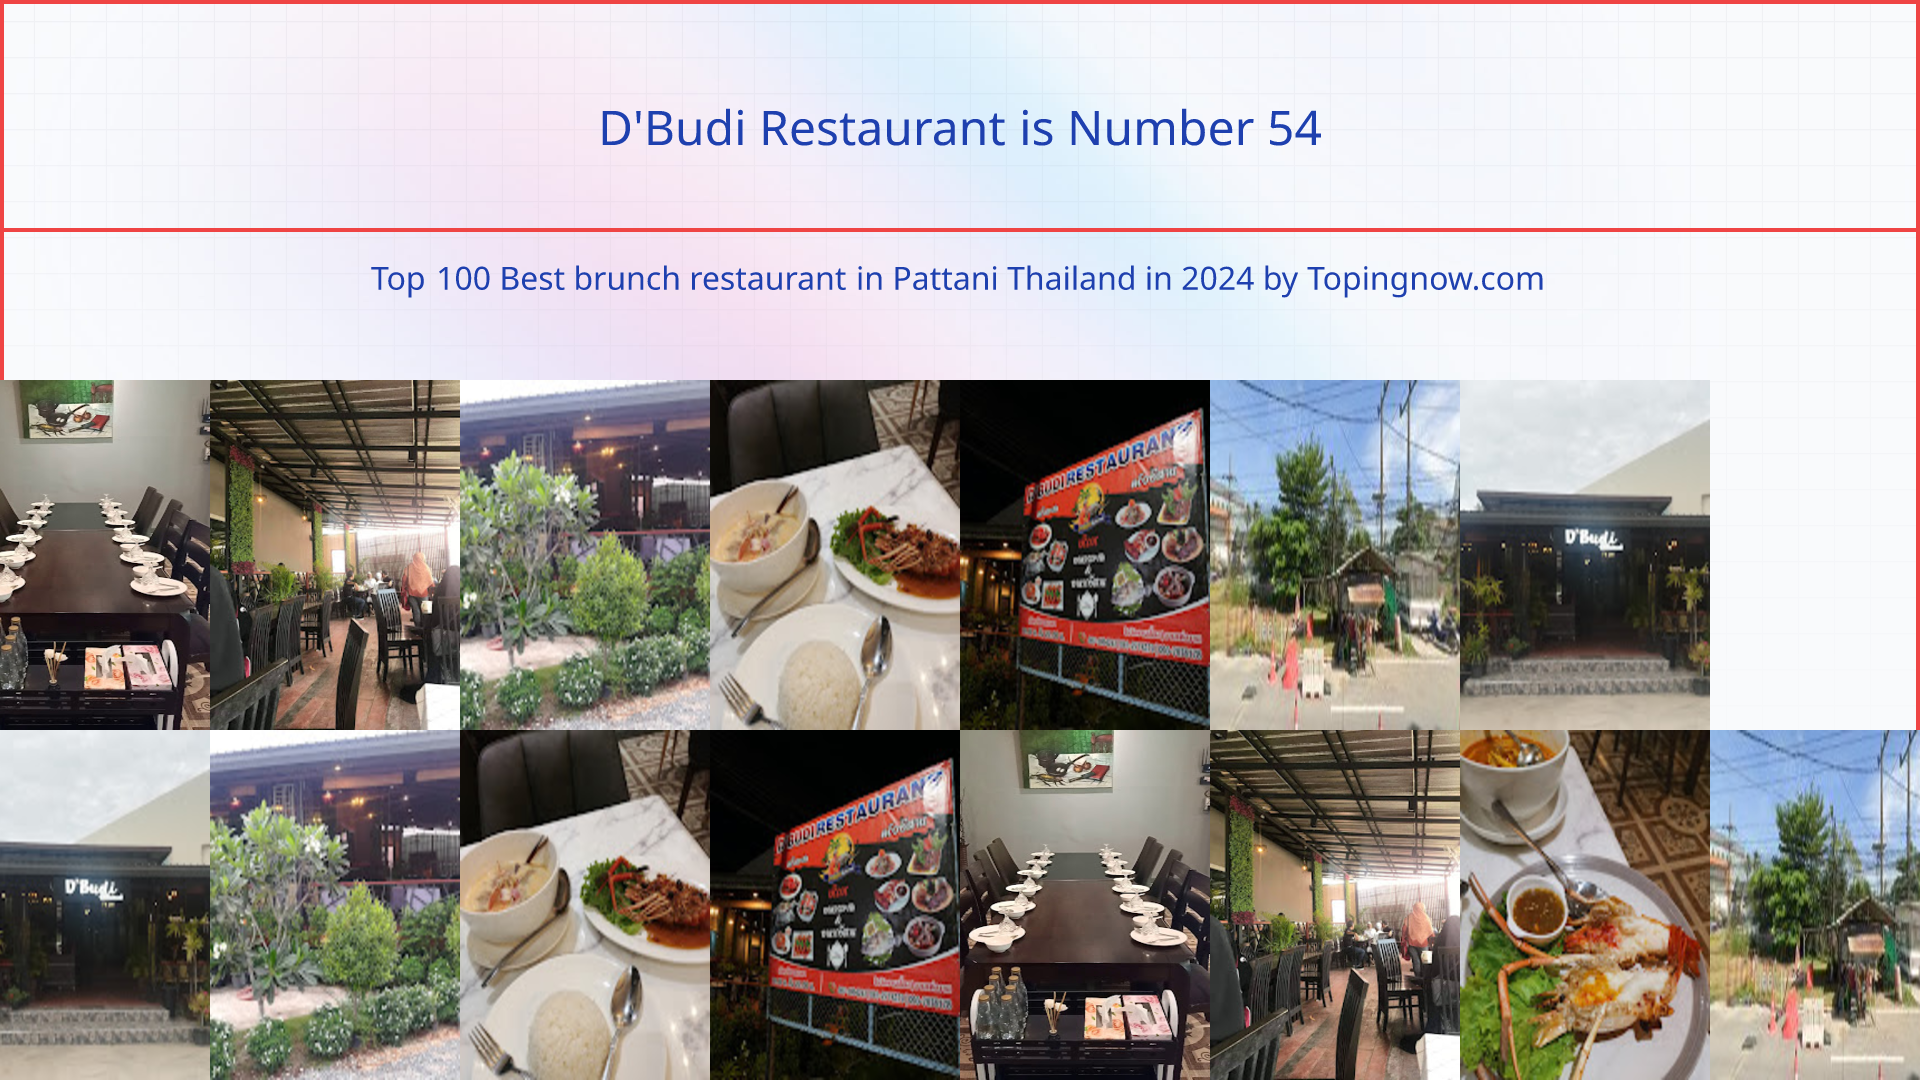 D'Budi Restaurant: Top 100 Best brunch restaurant in Pattani Thailand in 2024